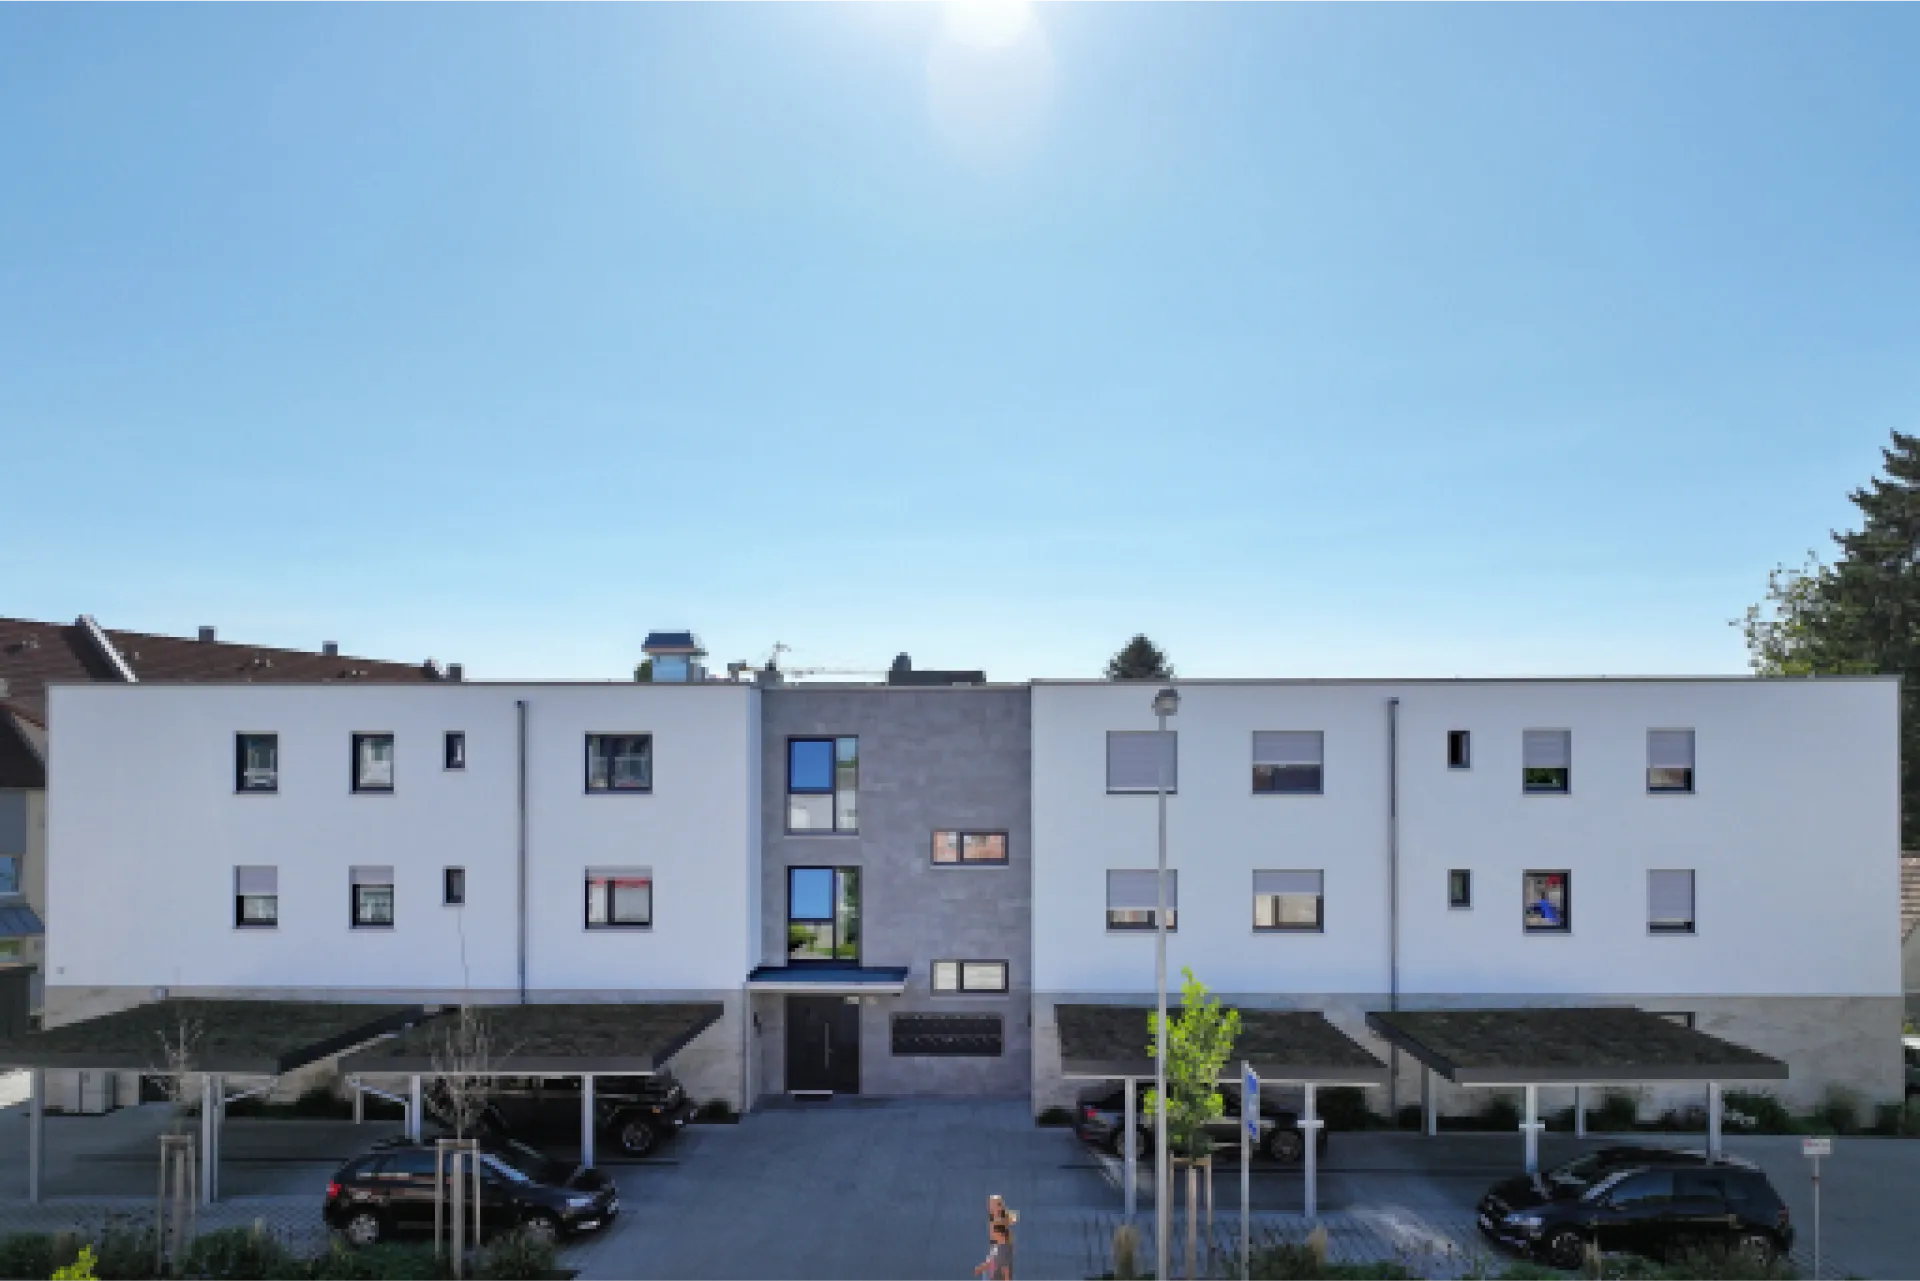 SCHICK Hausbau - Berchinger Straße - Freystadt - 16 Eigentumswohnungen in zeitgemäßer Architektur